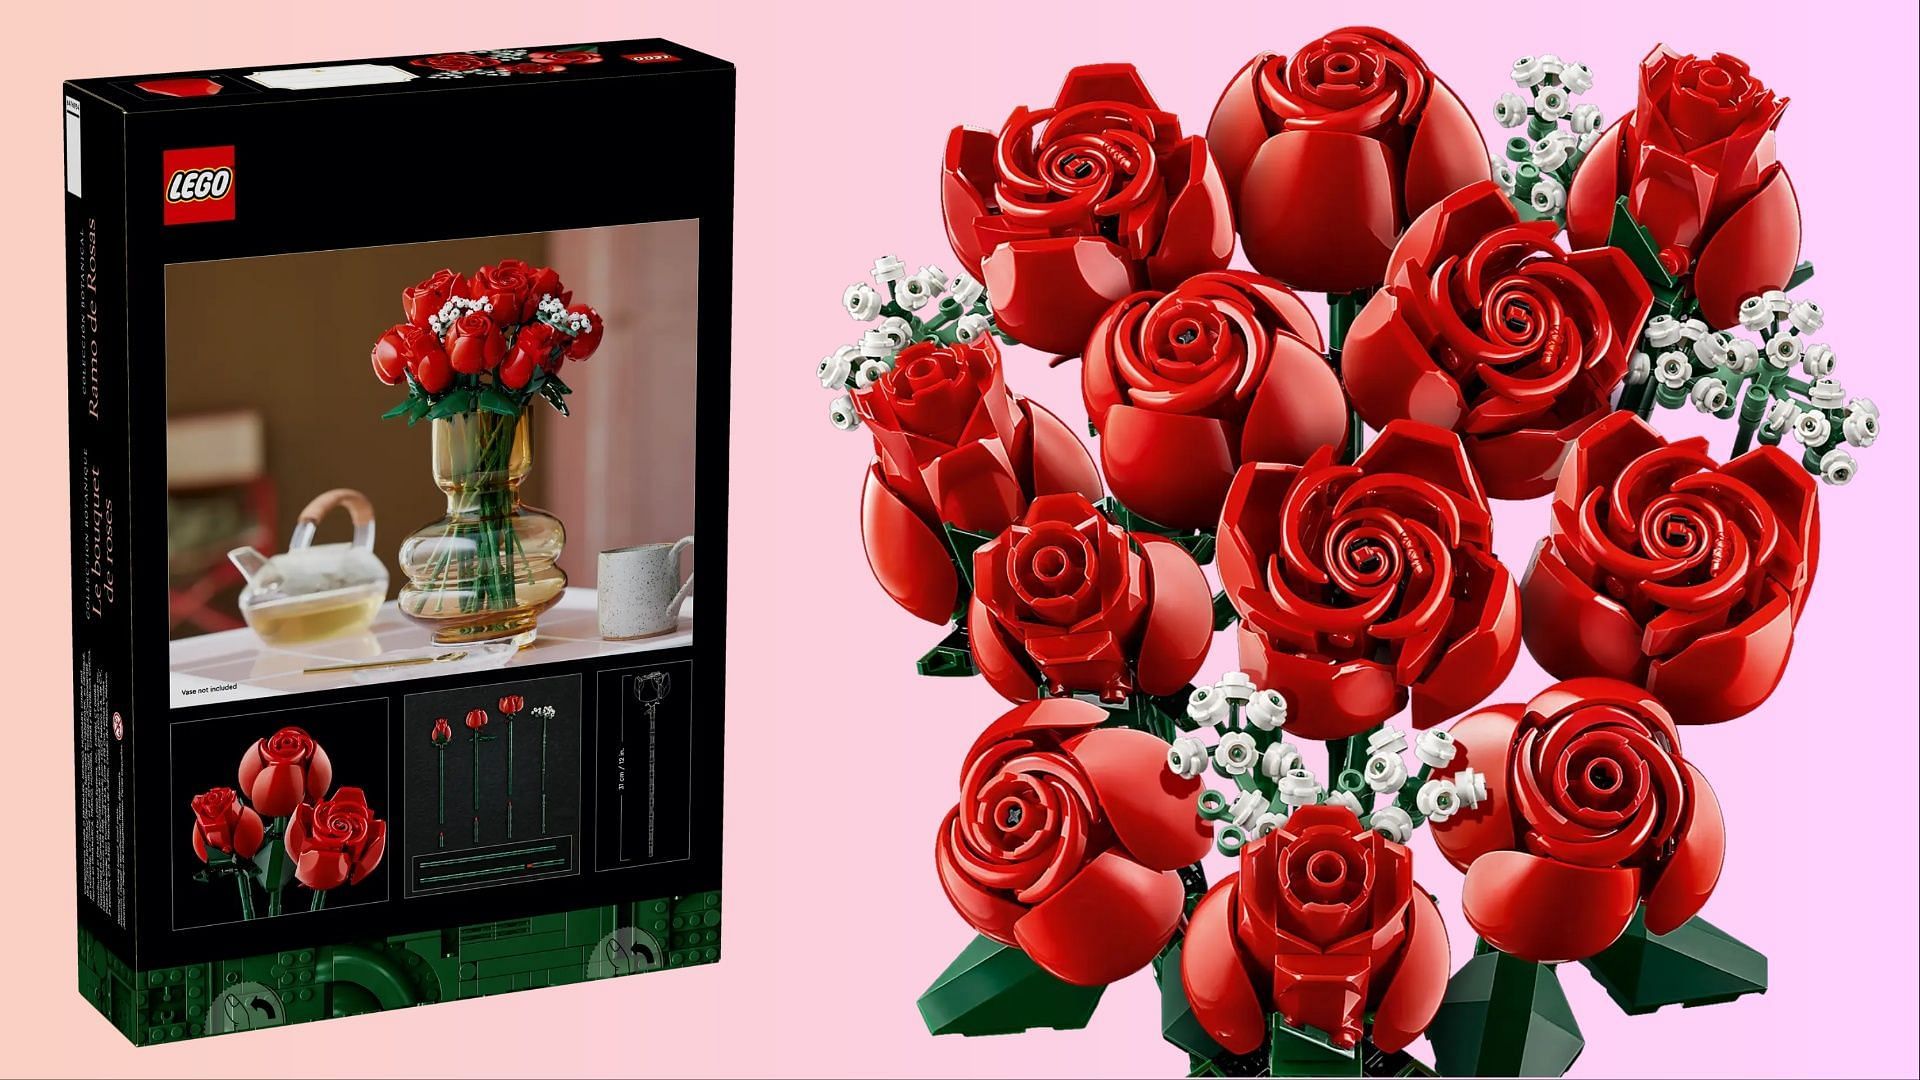 New Lego Bouquet of Roses set • • • • #legos #legoset #bouquetofroses